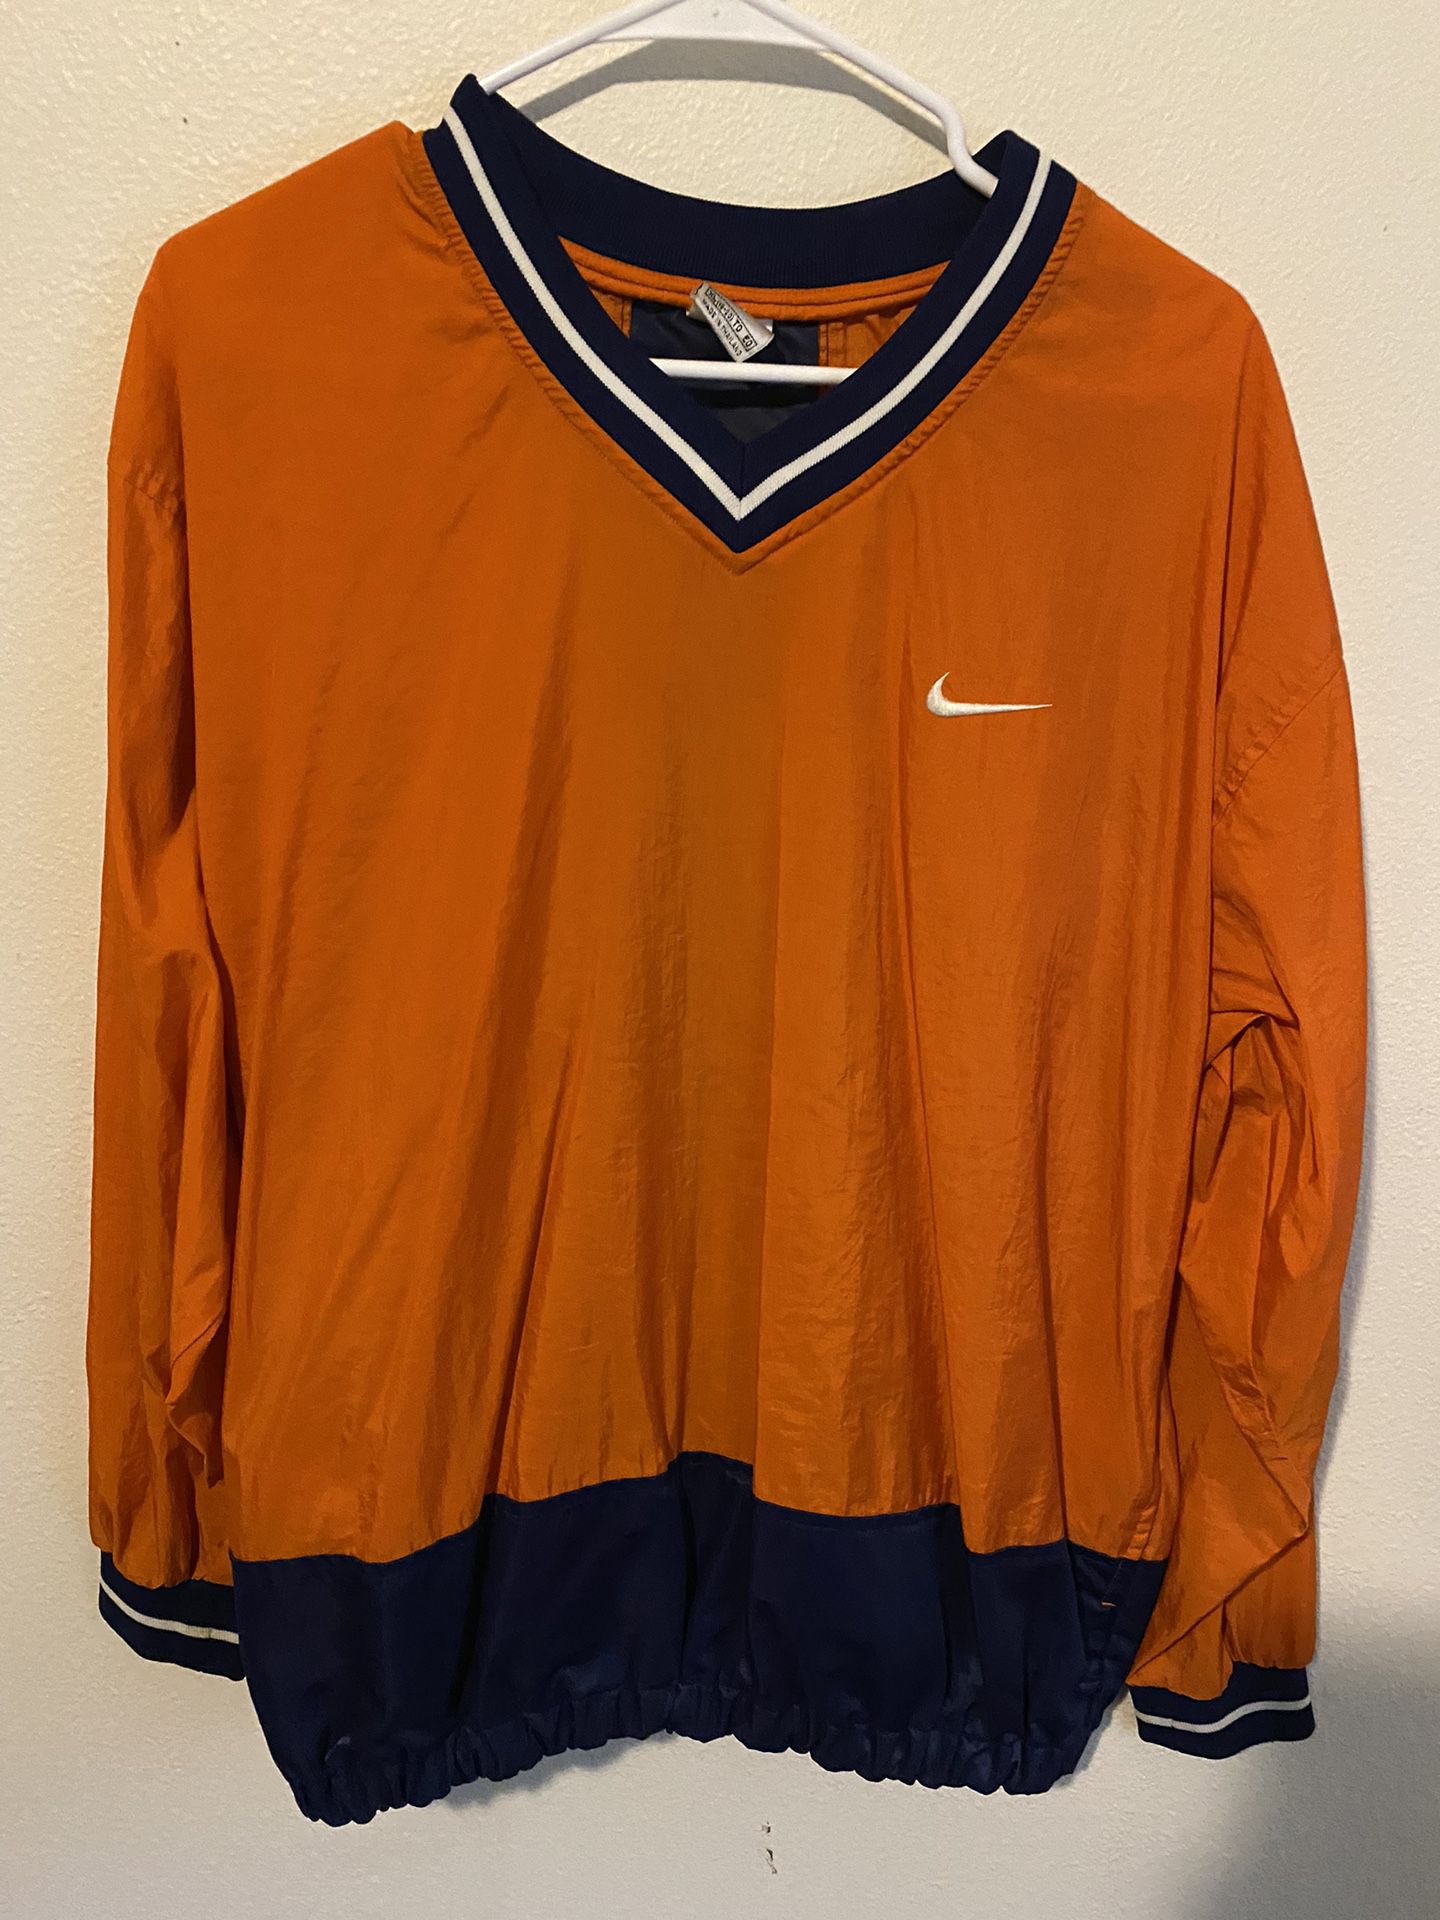 Orange Nike xl long sleeve rain jacket